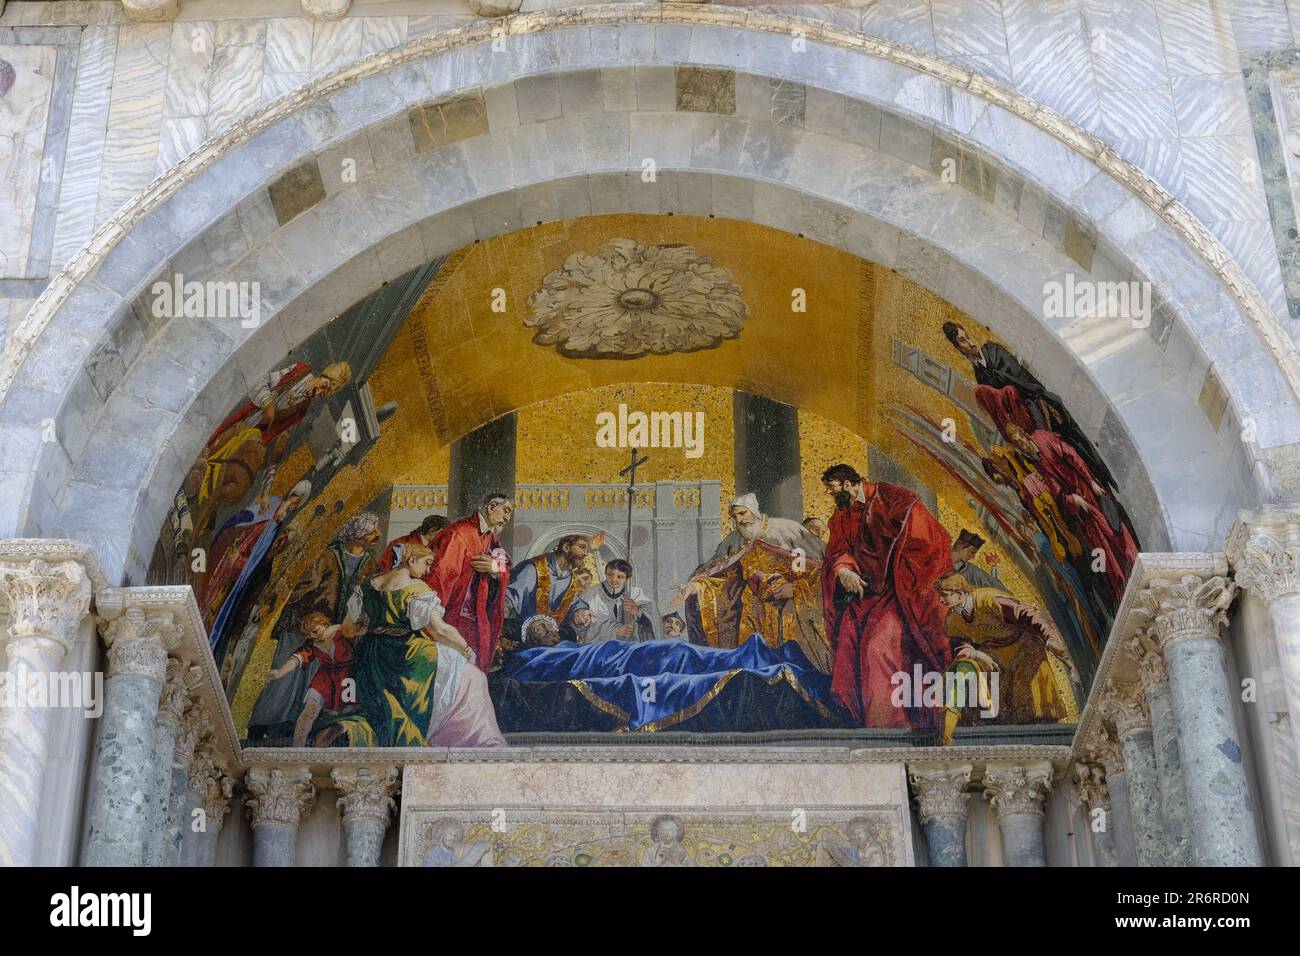 Venecia Italia - Basílica de San Marcos - Basílica de San Marcos - cuadros de fachada del lado oeste Foto de stock